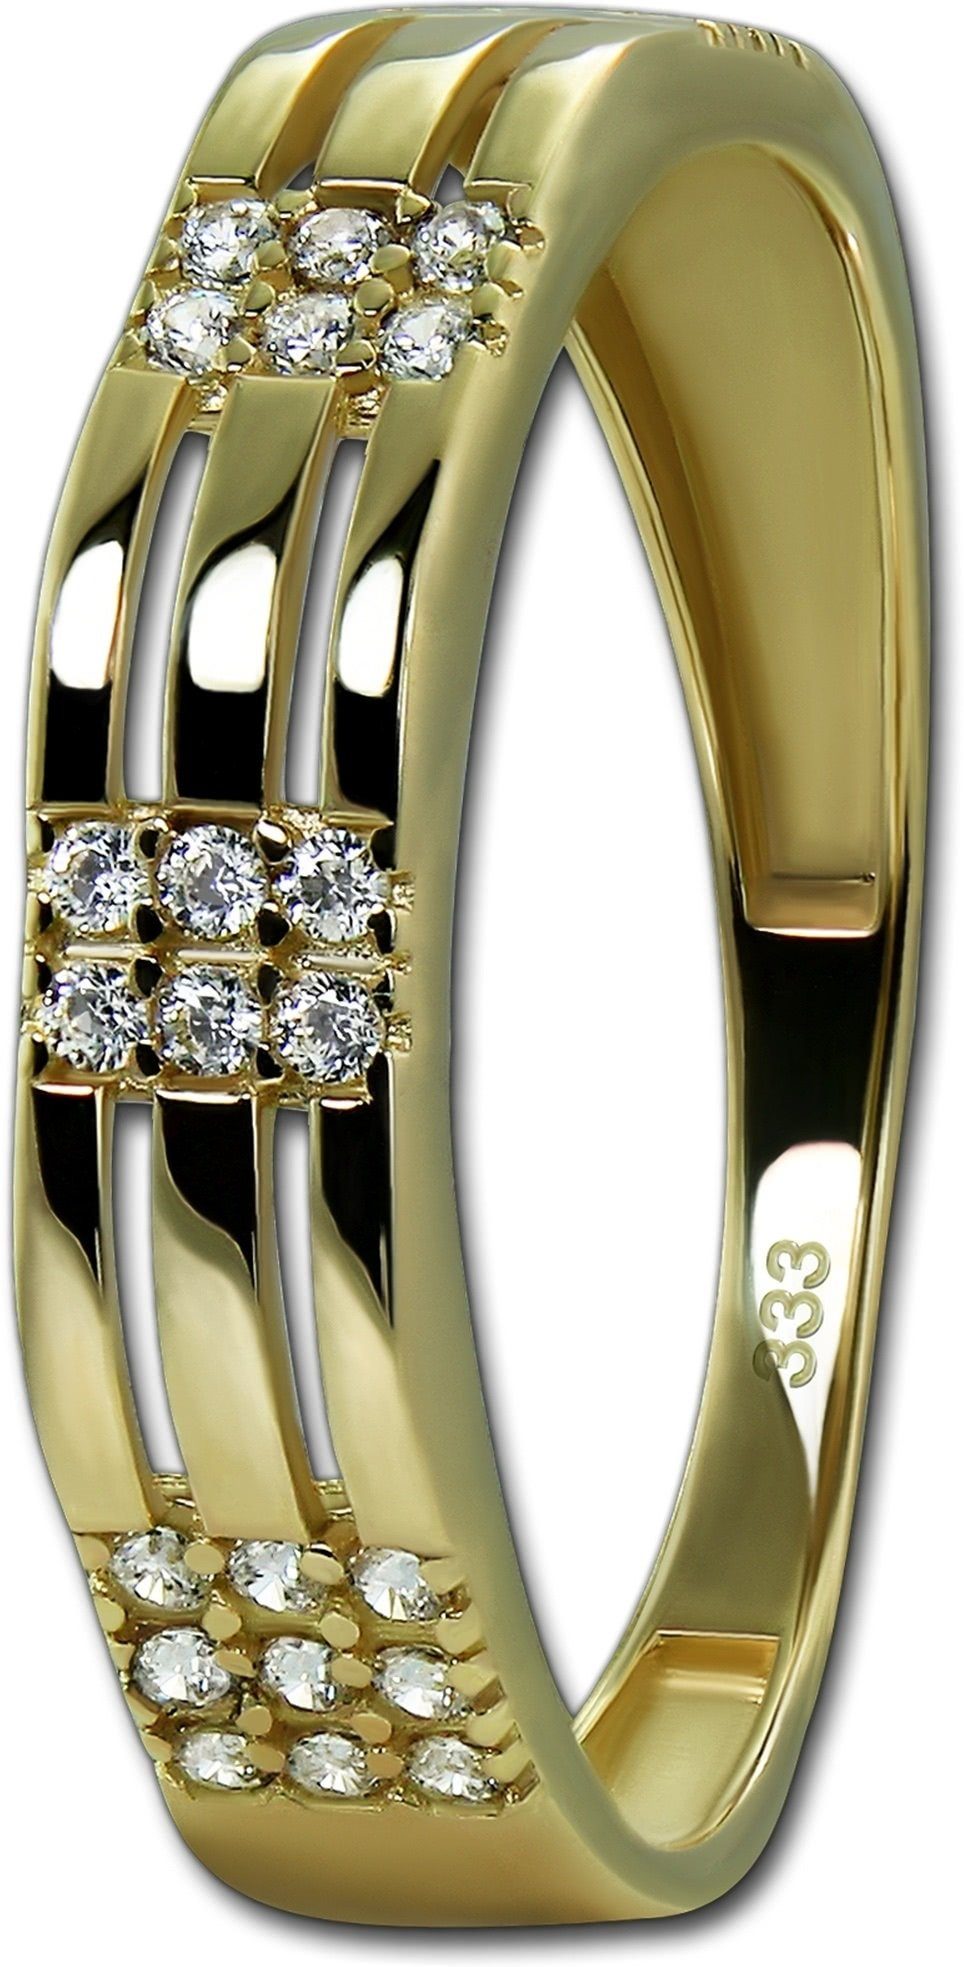 Gr.58 Sparkle Goldring Ring weiß gold, 333er GoldDream GoldDream (Fingerring), Gold Sparkle Gelbgold Damen Ring Echtgold,